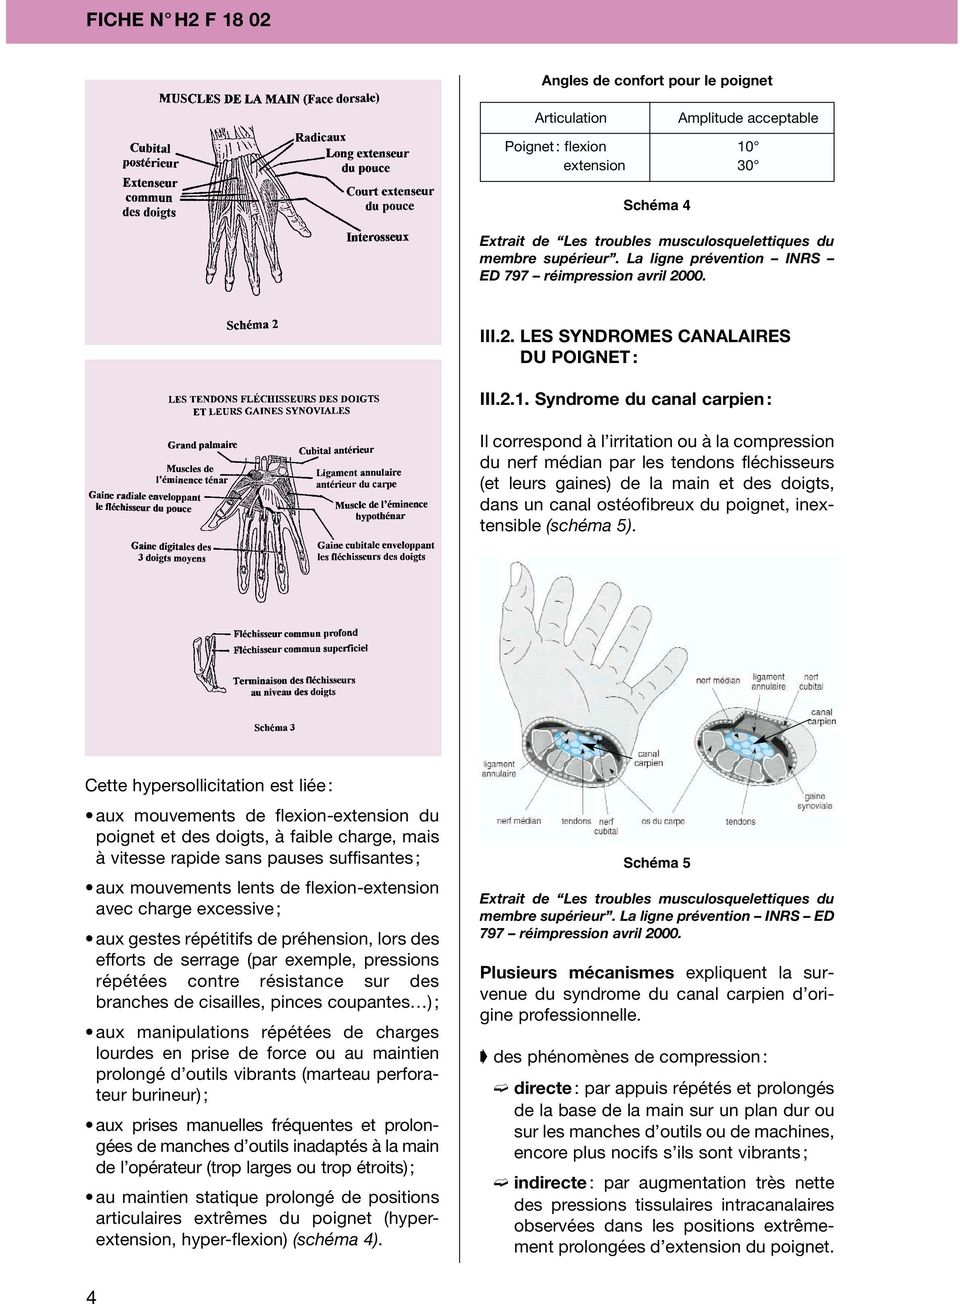 Syndrome du canal carpien : Il correspond à l irritation ou à la compression du nerf médian par les tendons fléchisseurs (et leurs gaines) de la main et des doigts, dans un canal ostéofibreux du